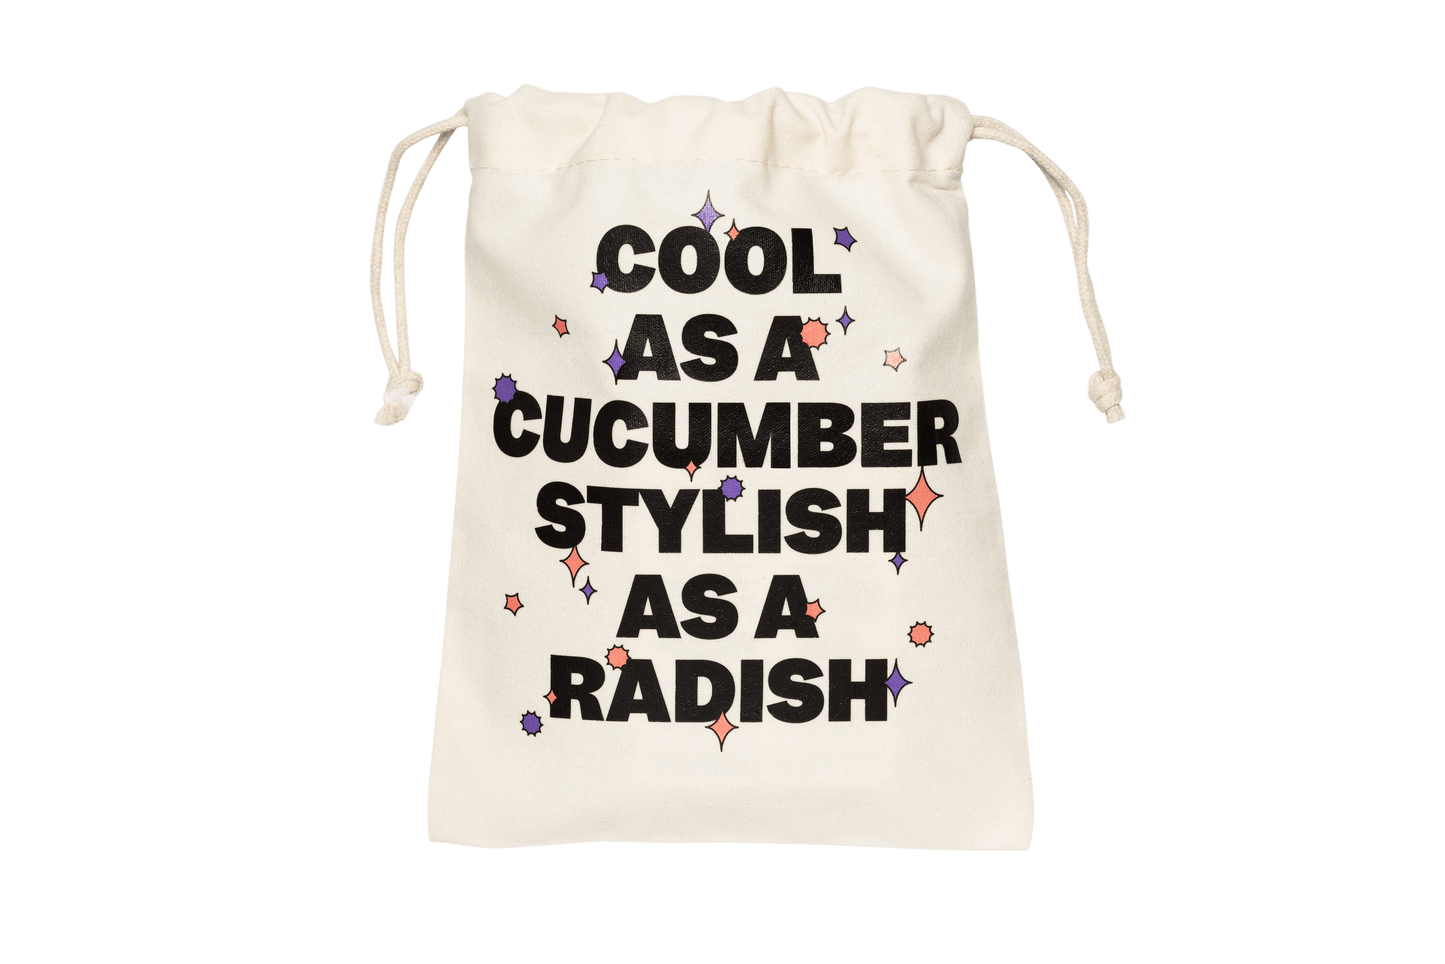 Verso du Pochon portant l’inscription « Cool as a cucumber stylish as a radish » entourée de différents motifs colorés 